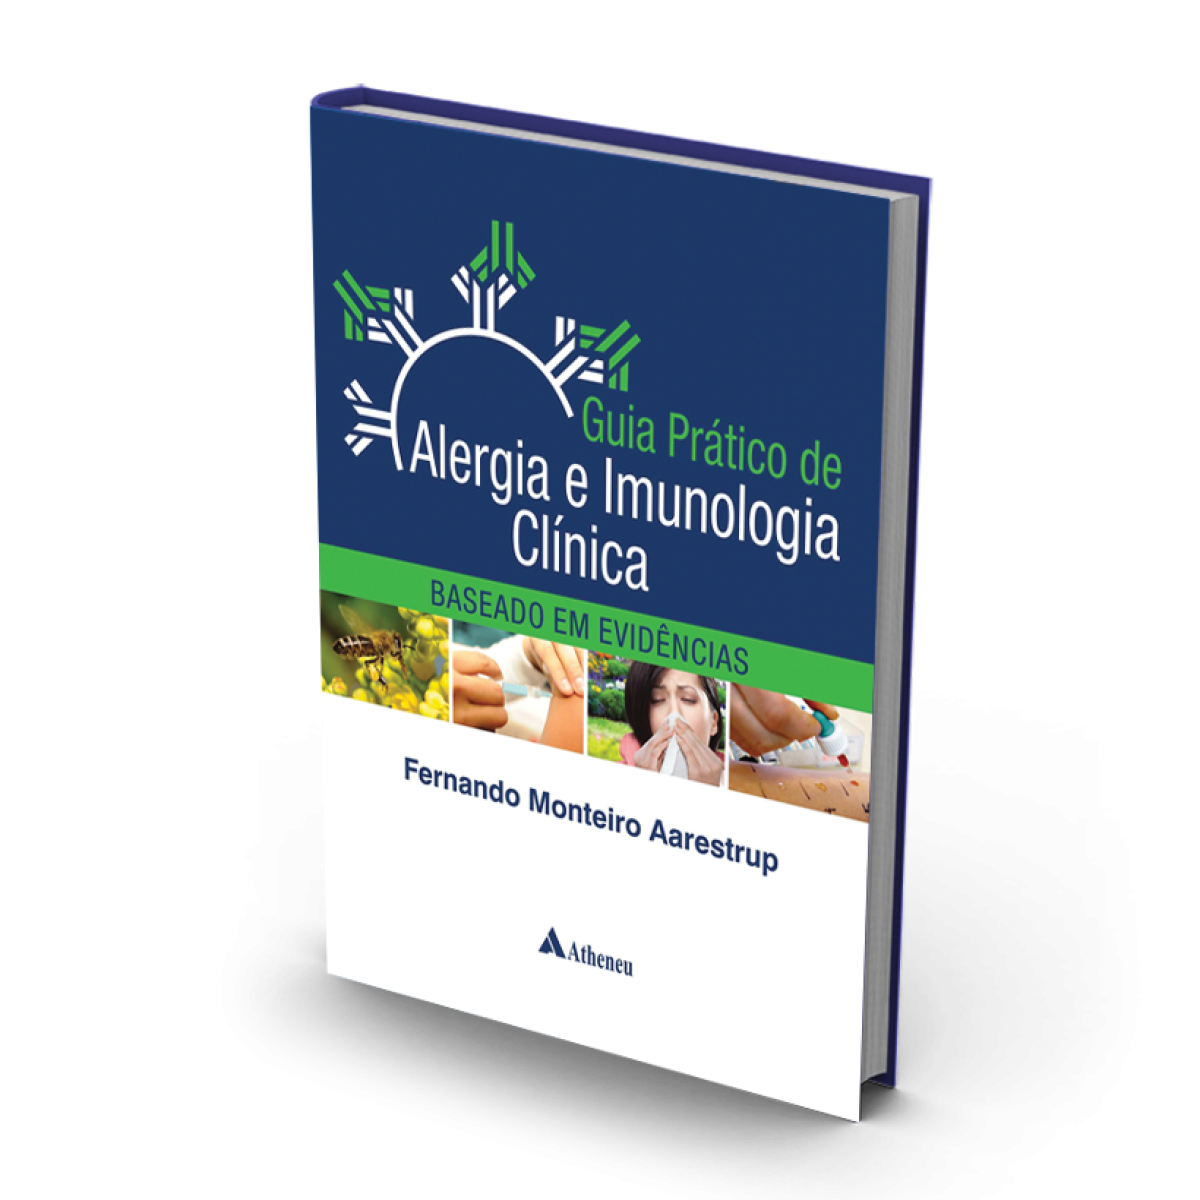 413_-_guia_pratico_de_alergia_e_imunologia_clinicas